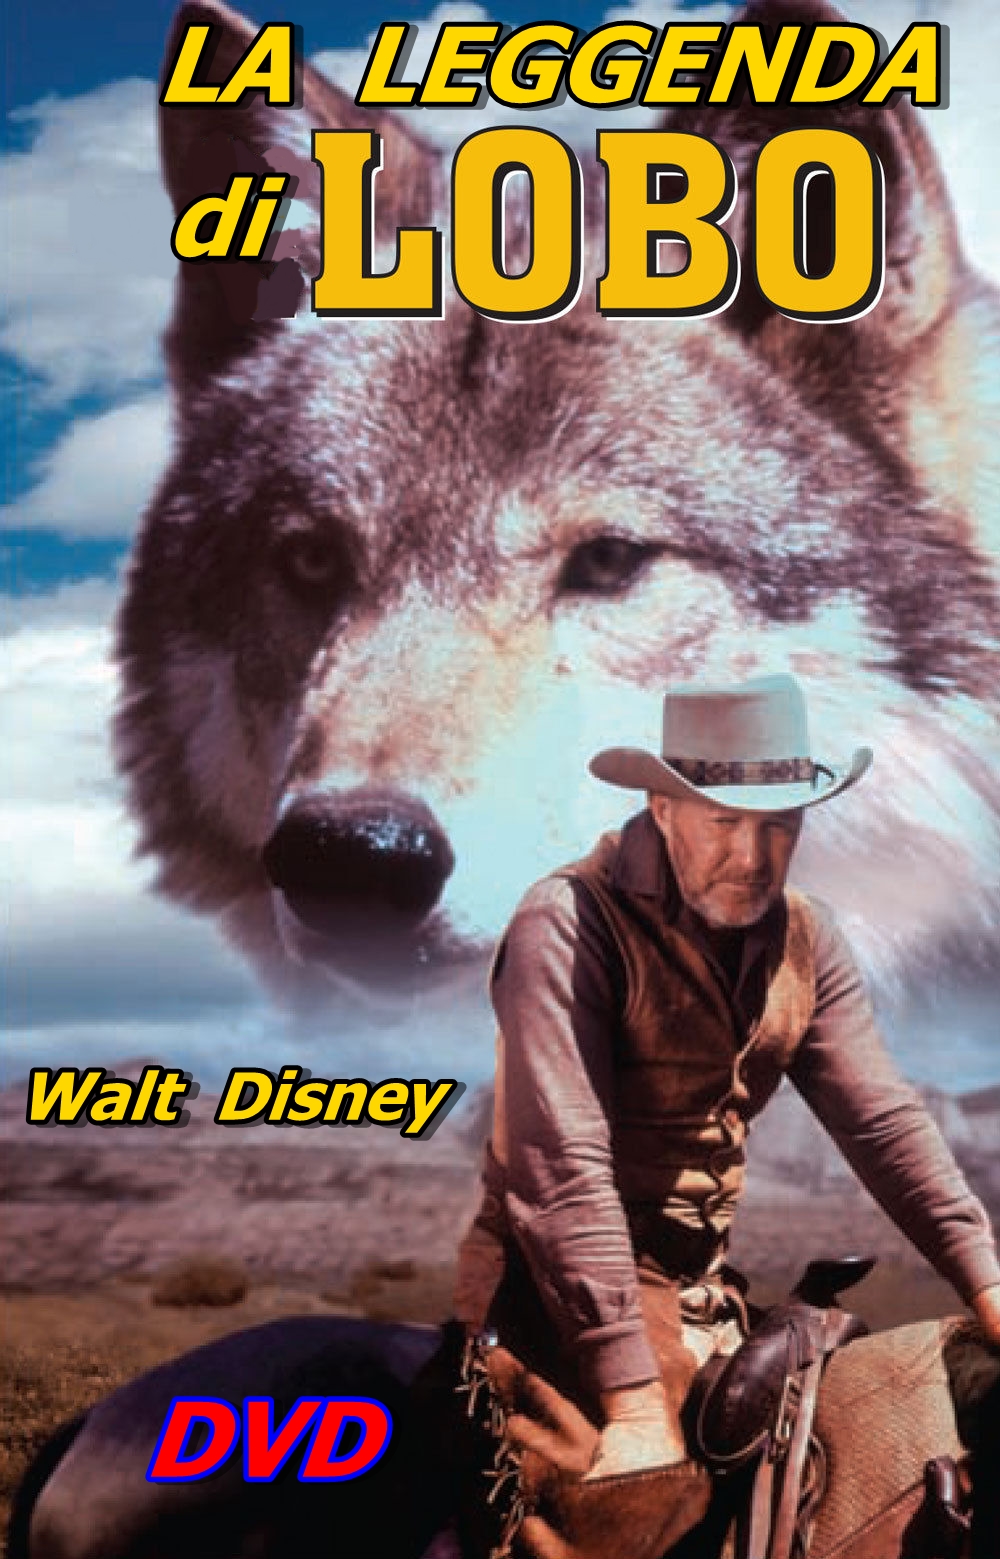 LA_LEGGENDA_DI_LOBO_DVD_1962_Walt_Disney_James_Algar